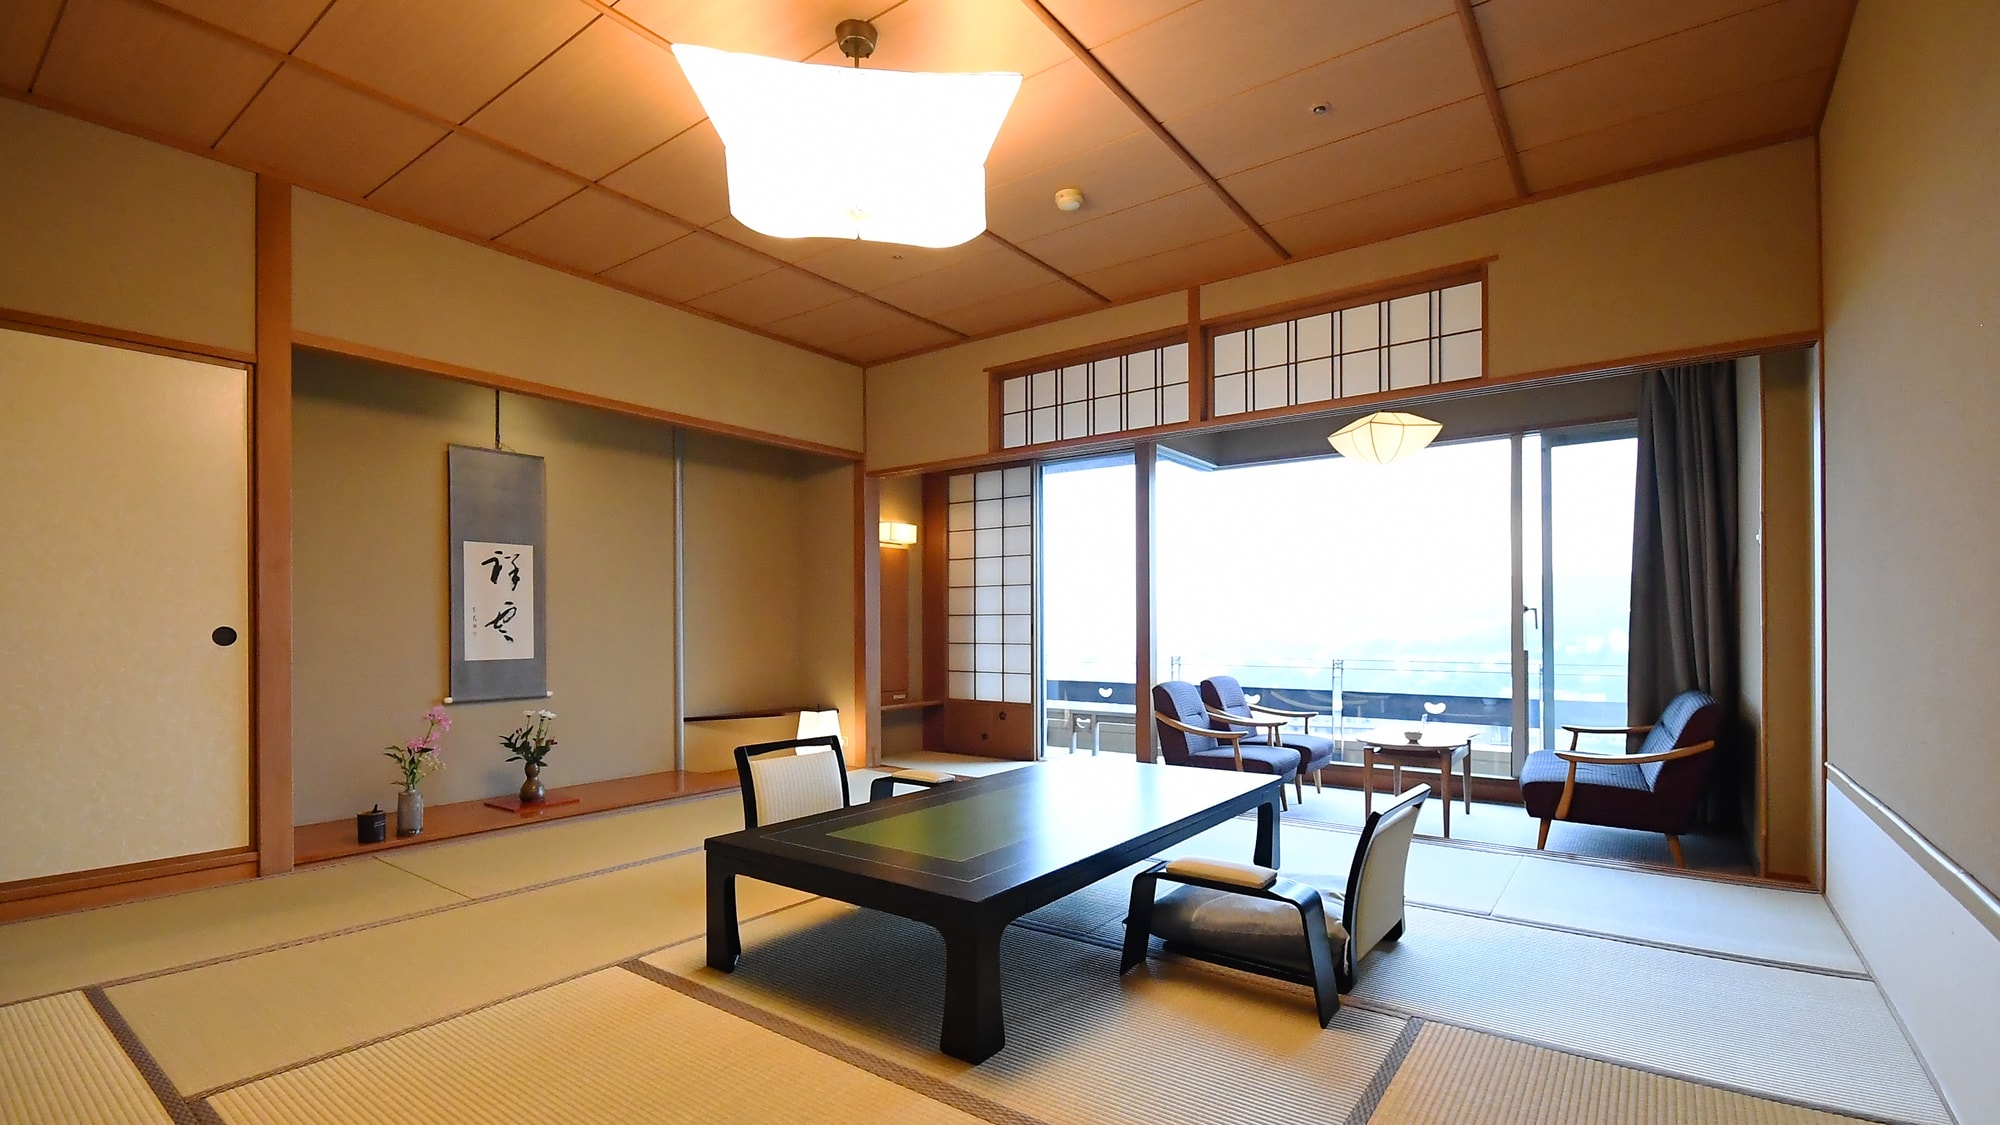 客房42間，以12.5張榻榻米的日式客房為主。我們有9間帶溫泉露天浴池的客房。